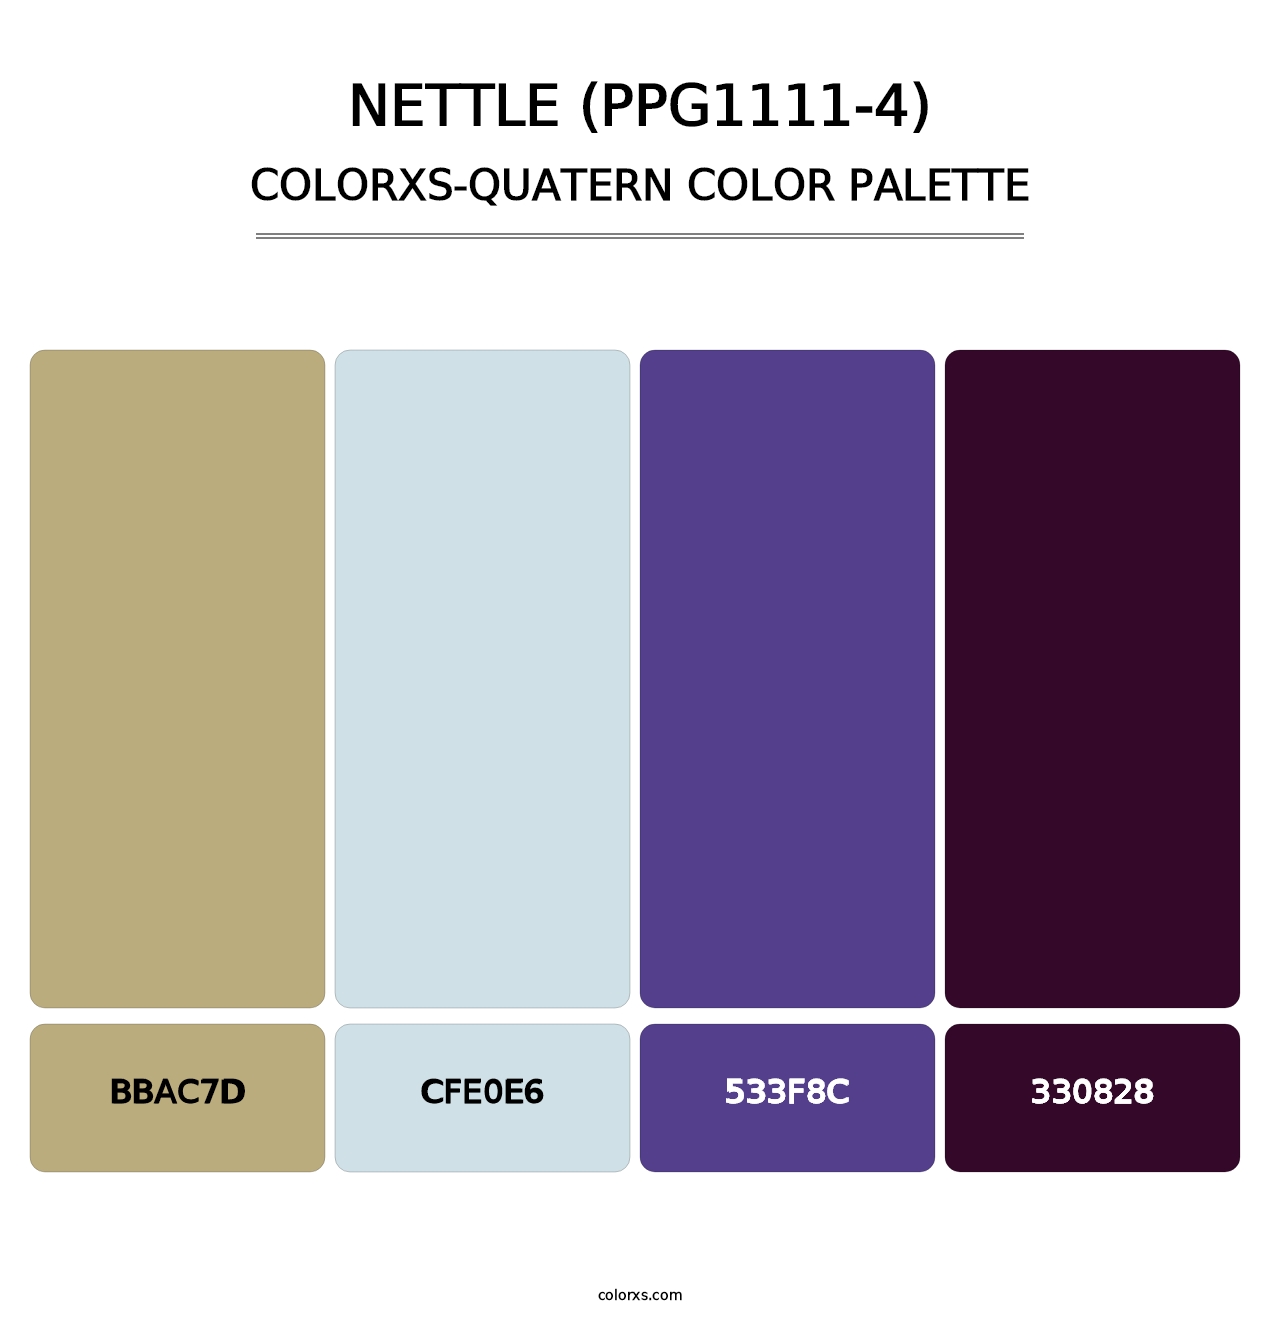 Nettle (PPG1111-4) - Colorxs Quatern Palette